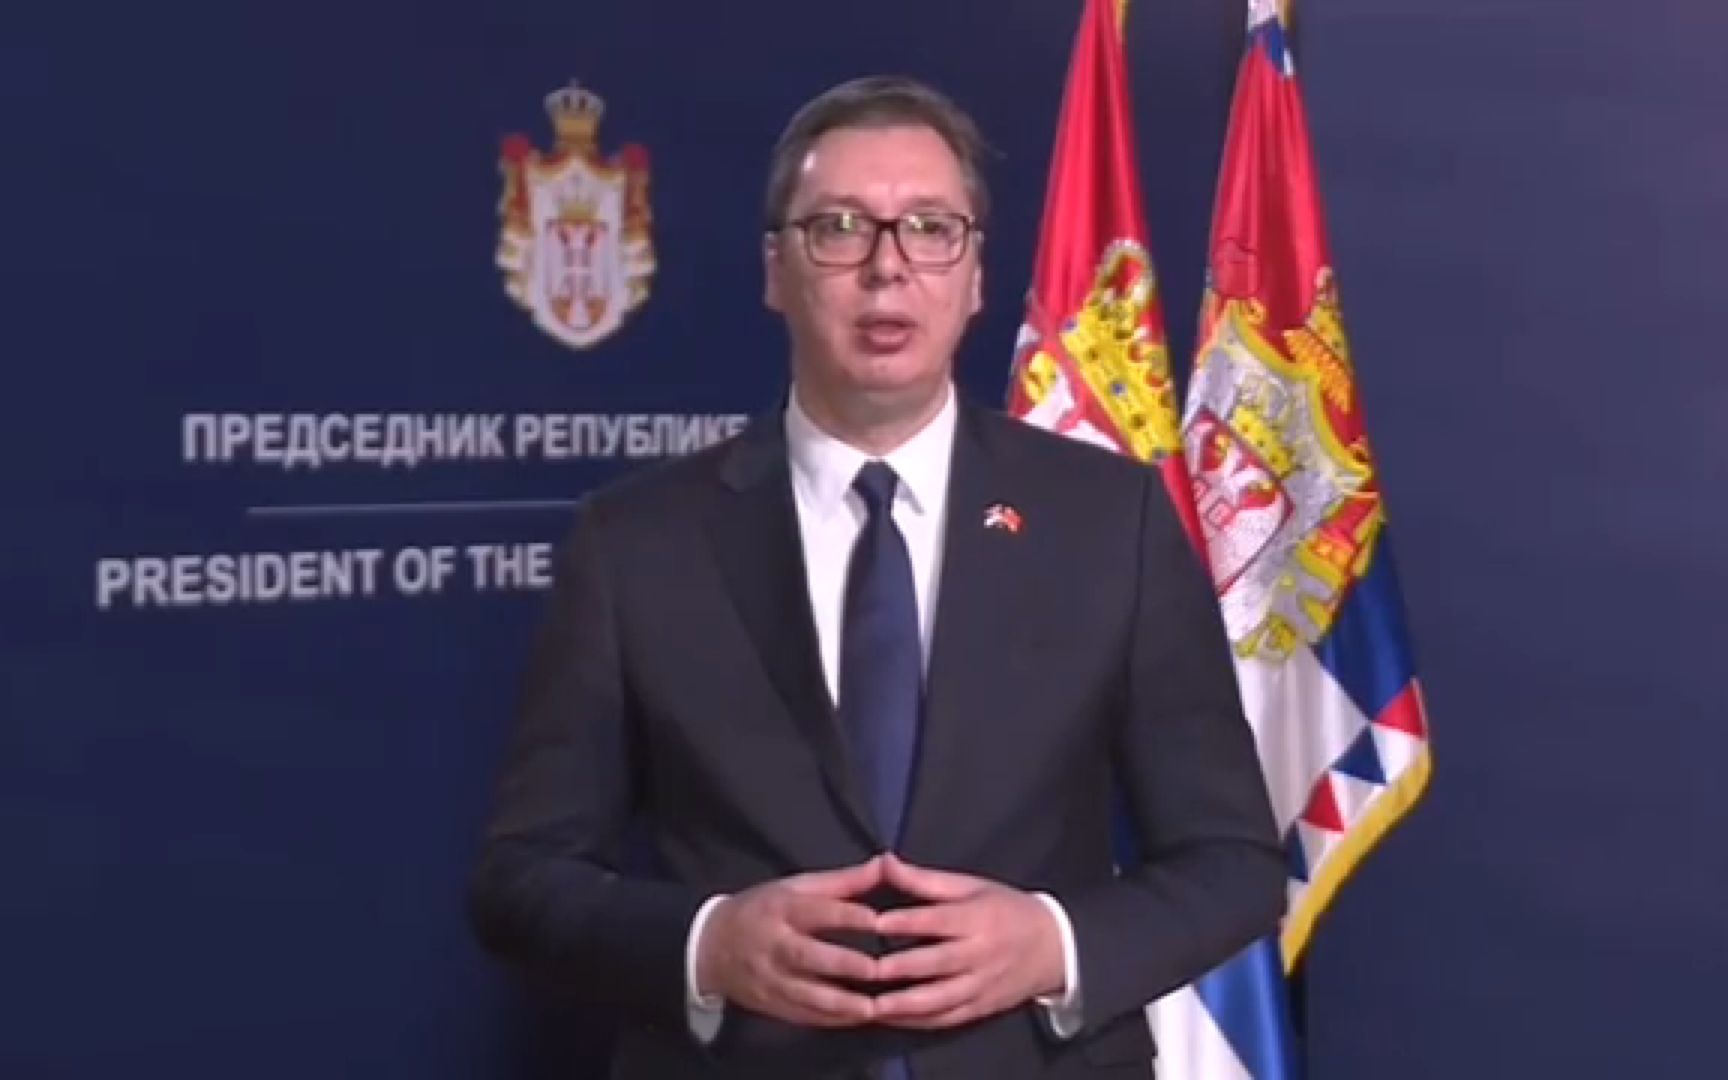 塞尔维亚总统武契奇强调支持中国主权和领土完整_陈波_重点_文章